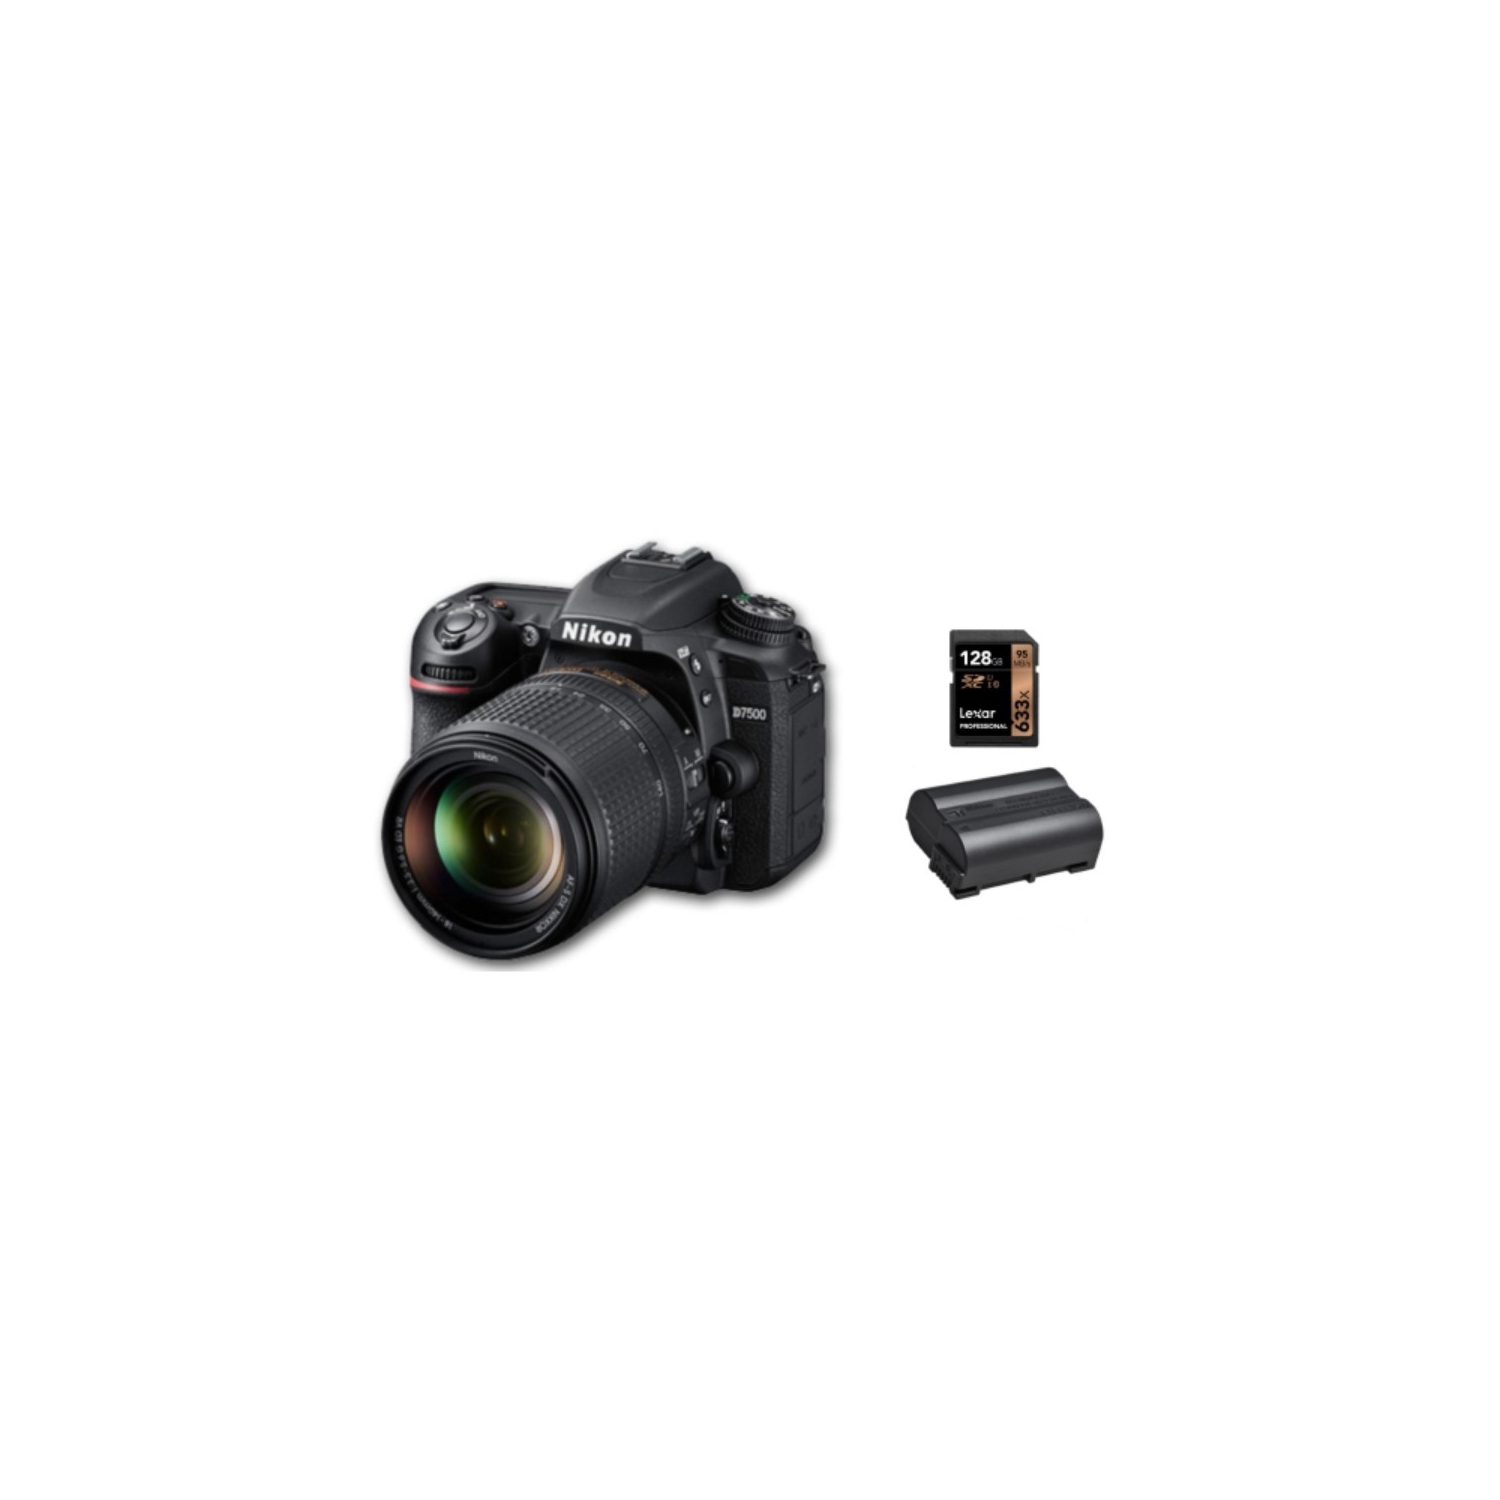 Nikon D7500 18-140 + EN-EL15C Batt + 128GB 800x SD